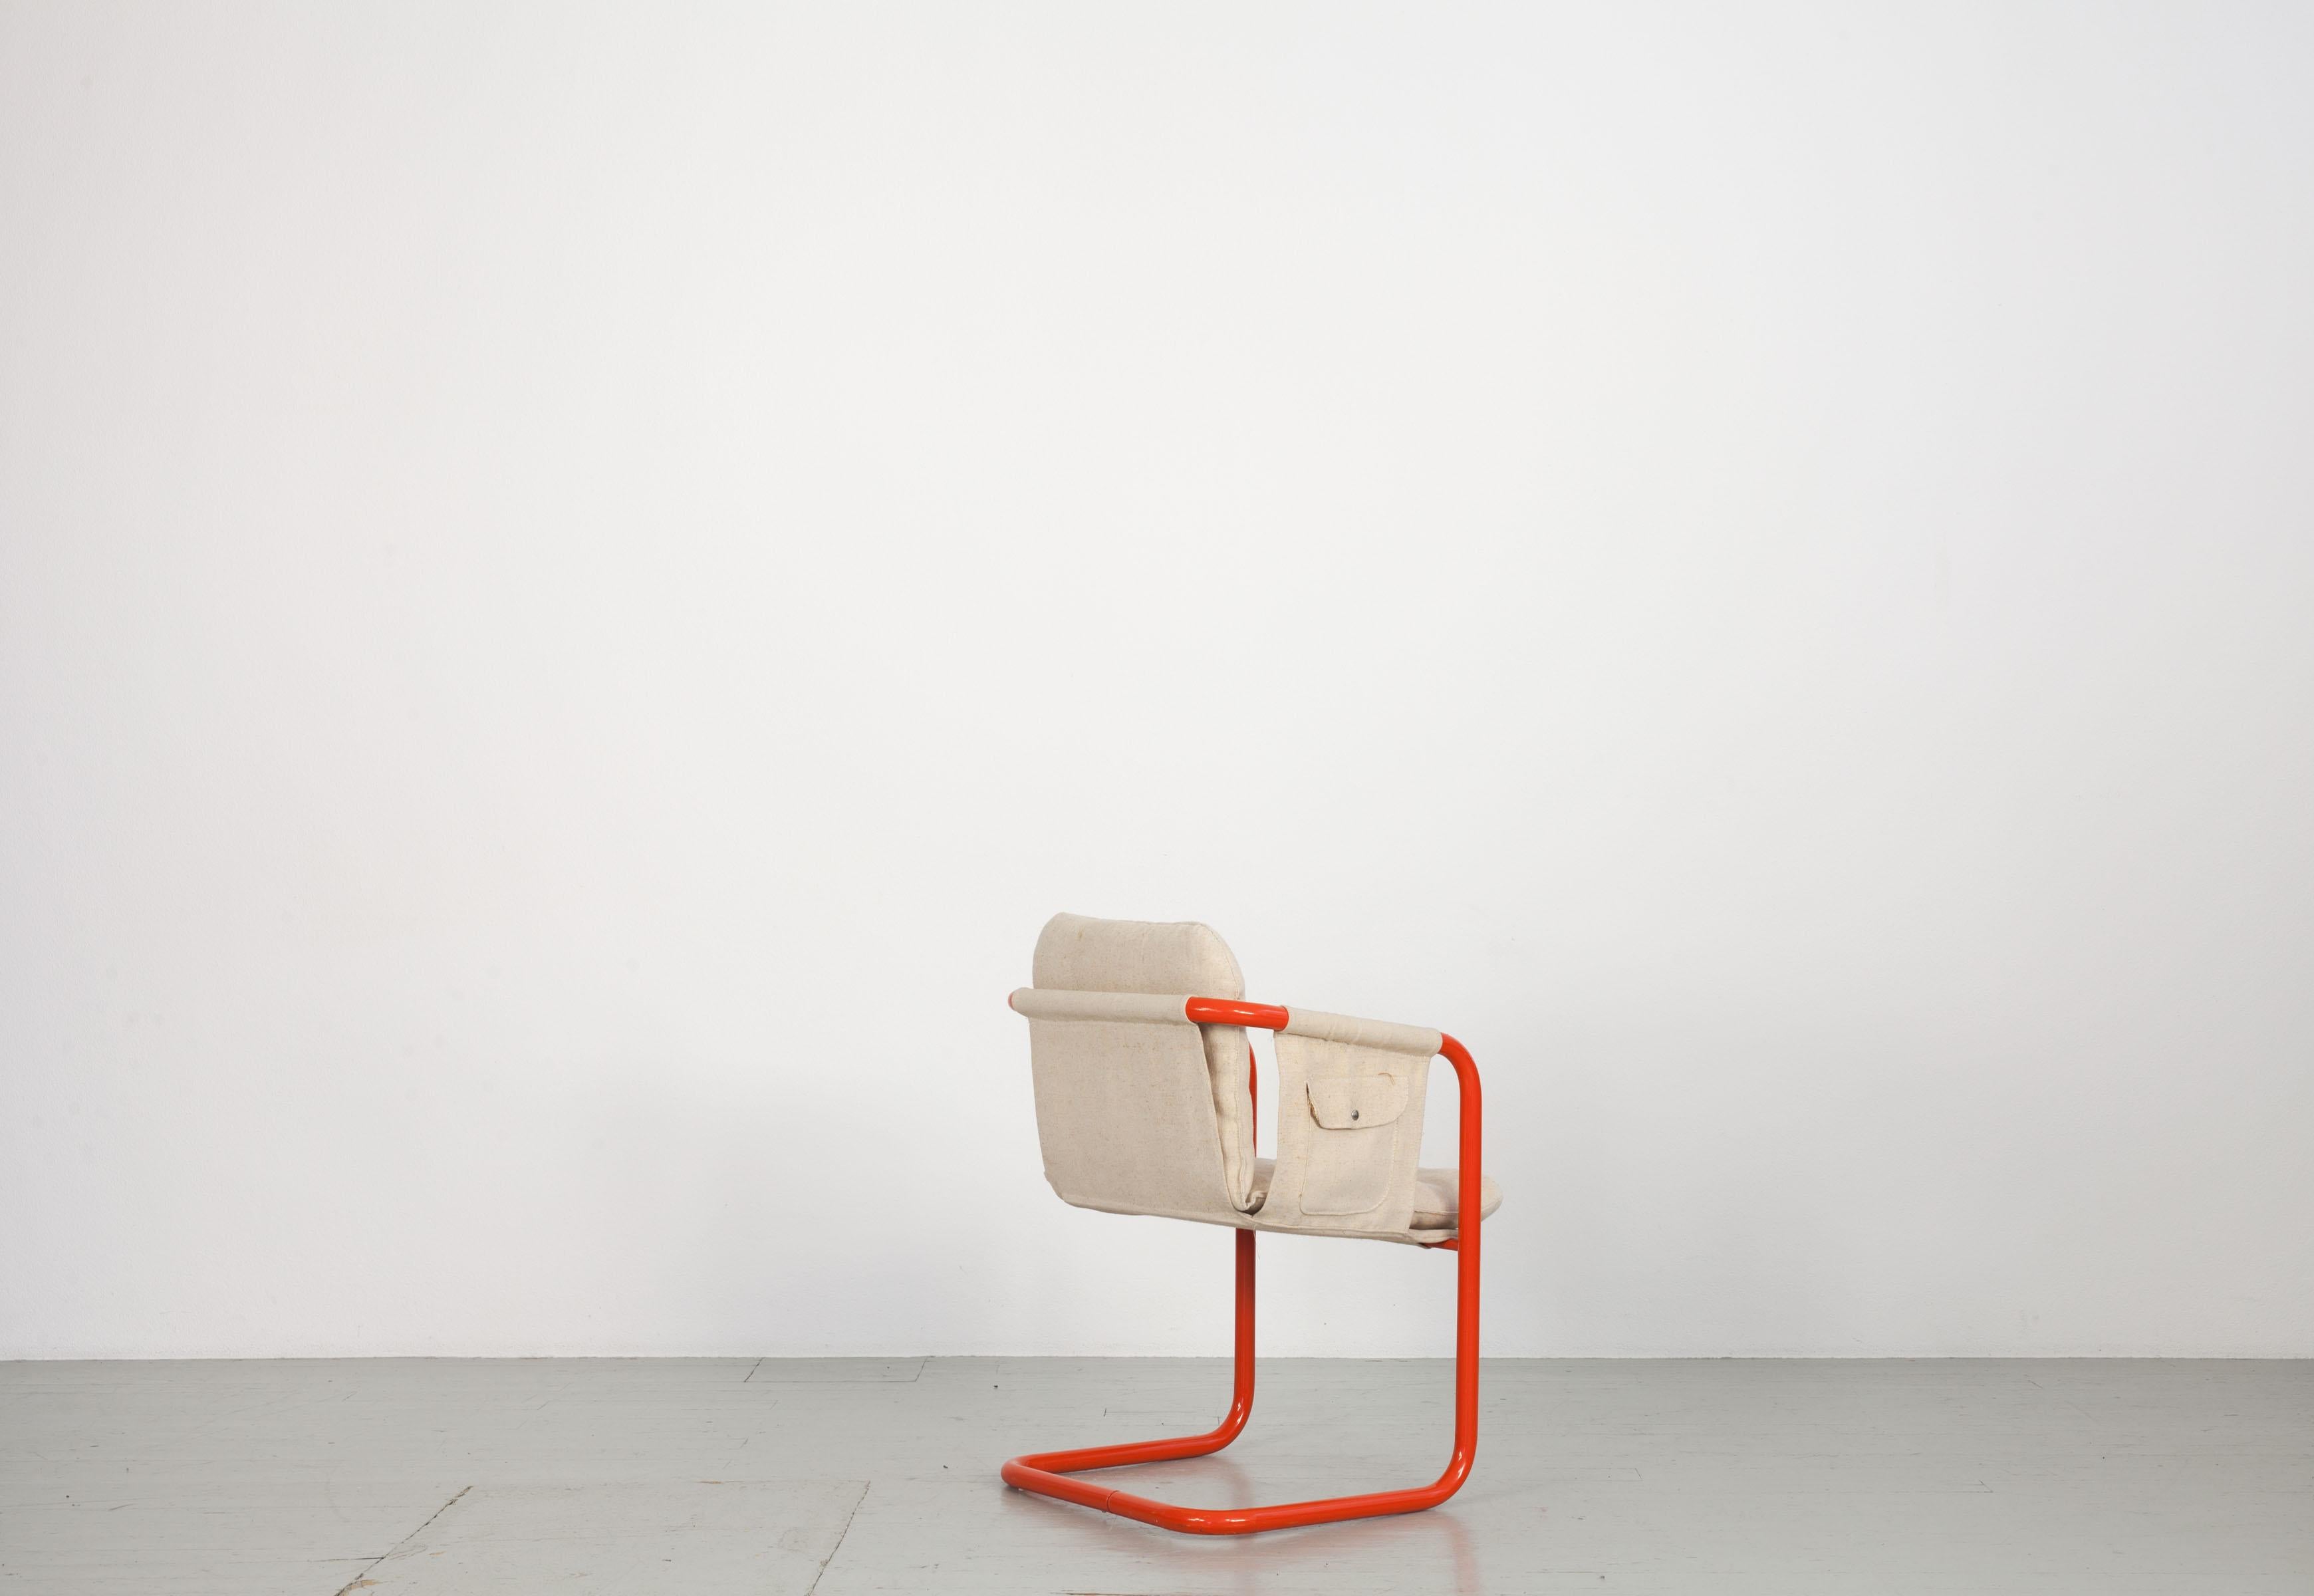 Dieses Set aus 2 Stühlen wurde im Stil von Gae Aulenti hergestellt. Der helle Leinenbezug kontrastiert mit dem orangefarbenen Stahlrohrgestell. Die Stühle sind in gutem Zustand.
Zögern Sie nicht, uns für weitere Einzelheiten zu kontaktieren